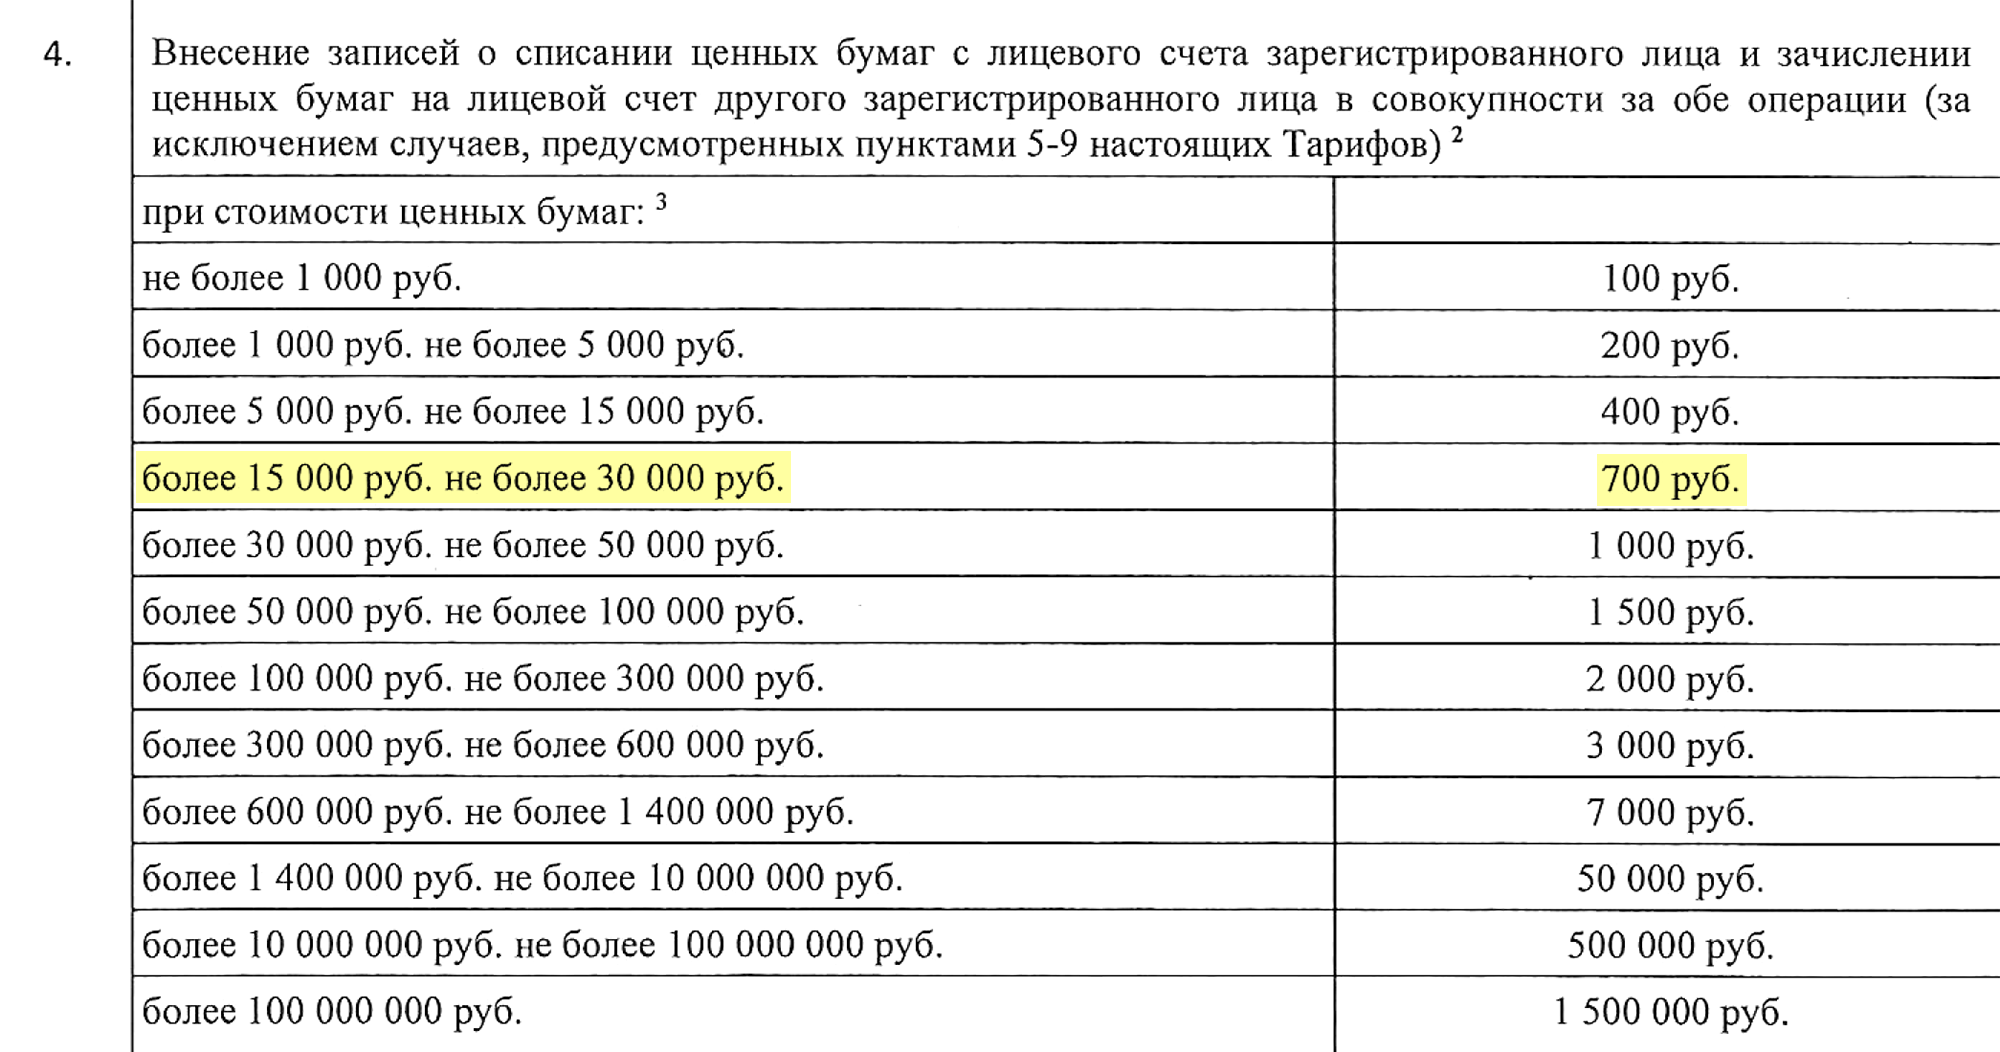 У регистратора «Газпрома» смена собственника для моих 100 акций стоит 700 ₽. «Сервис Капитал» предложил сделать это за 3000 ₽